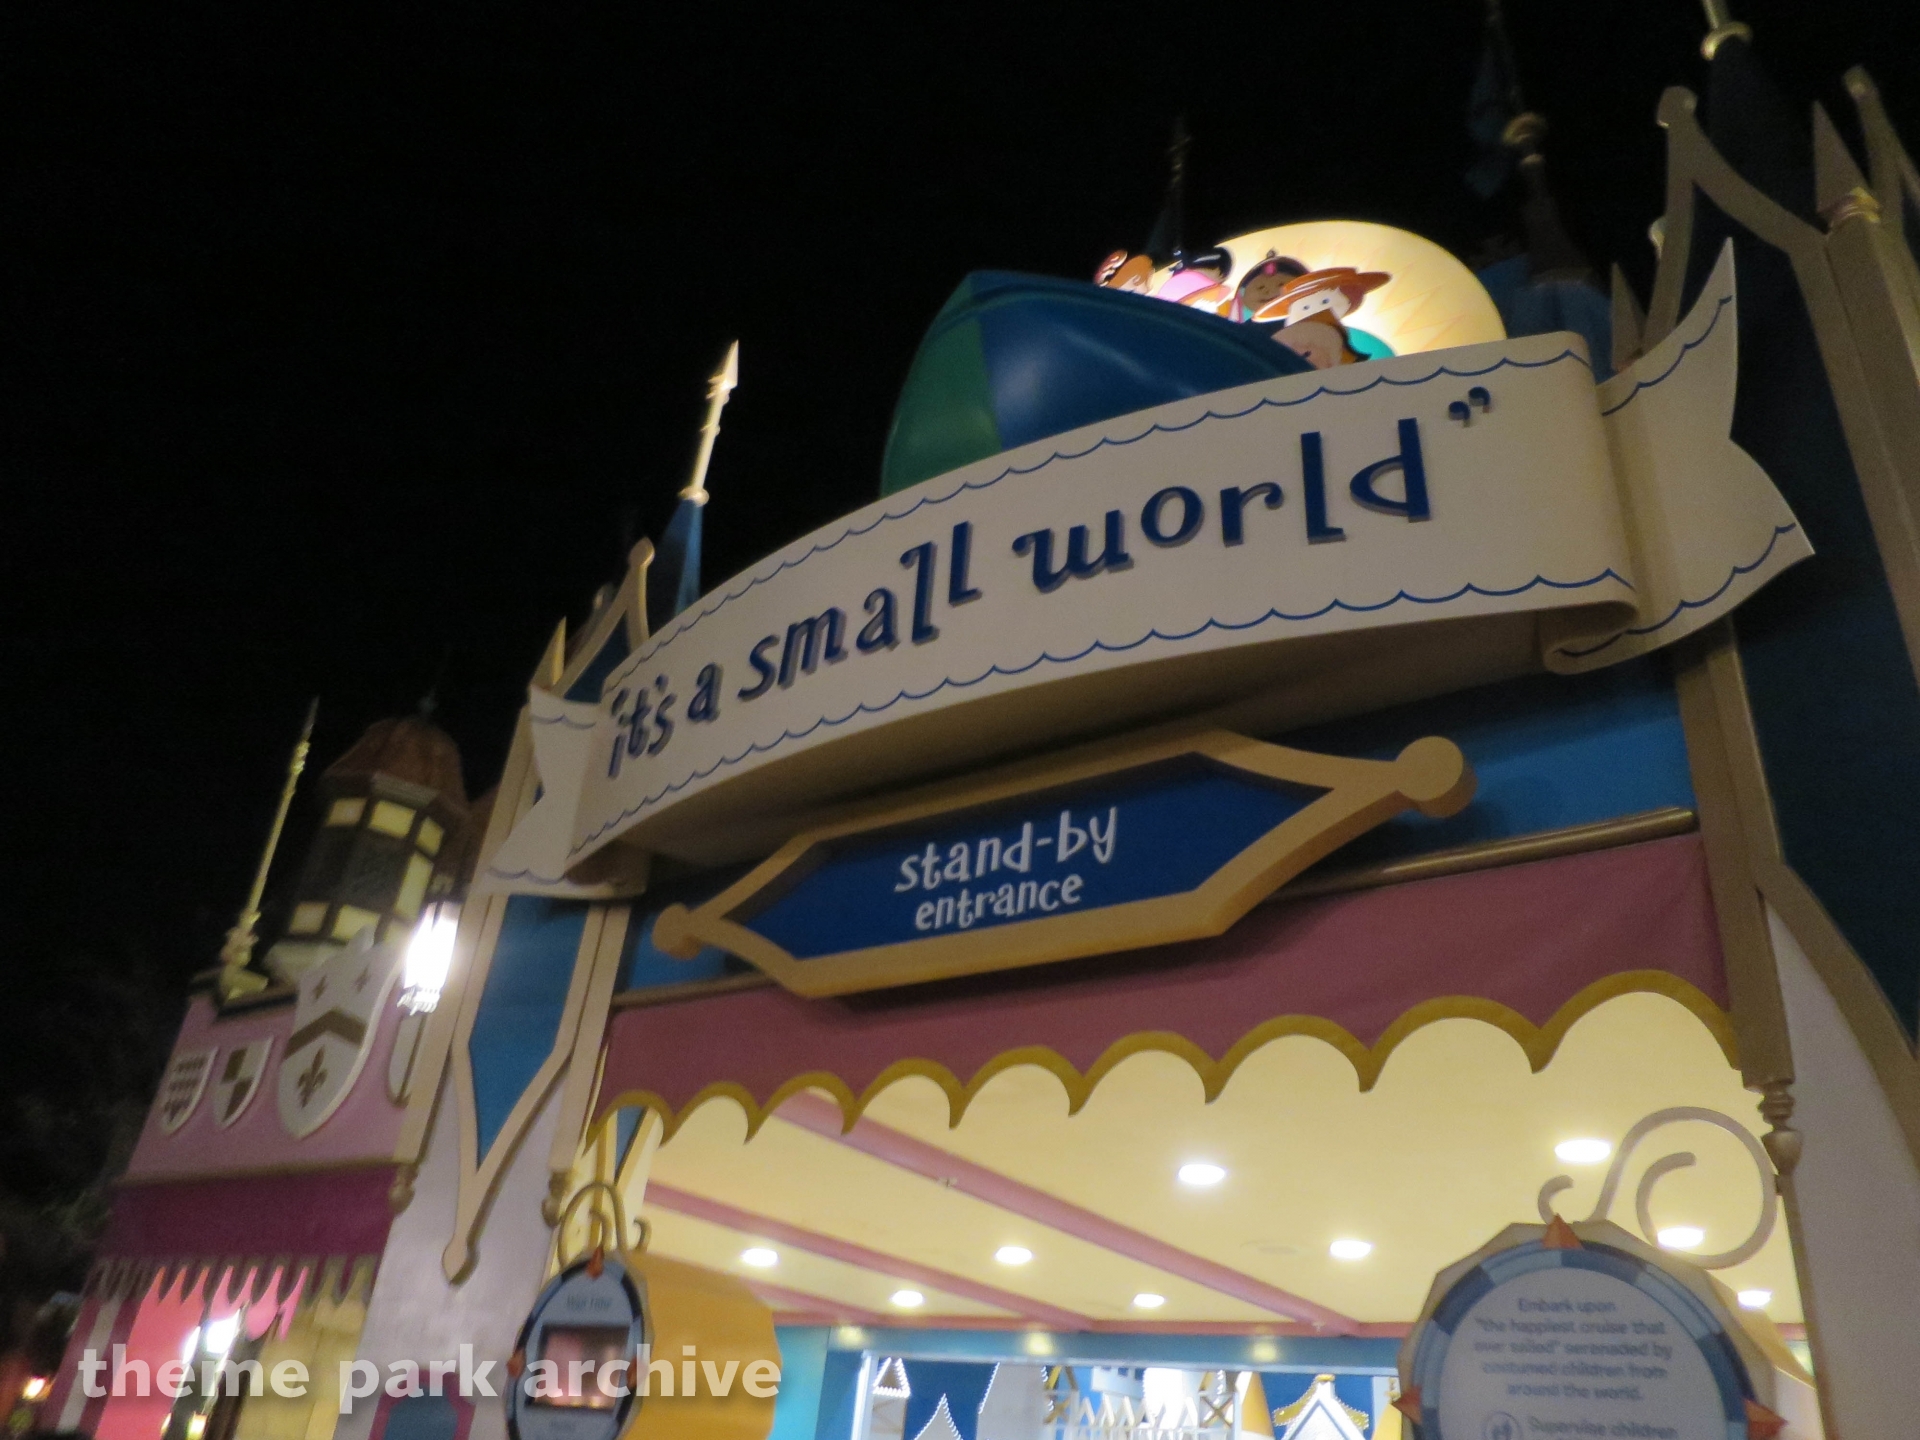 It's a Small World at Magic Kingdom